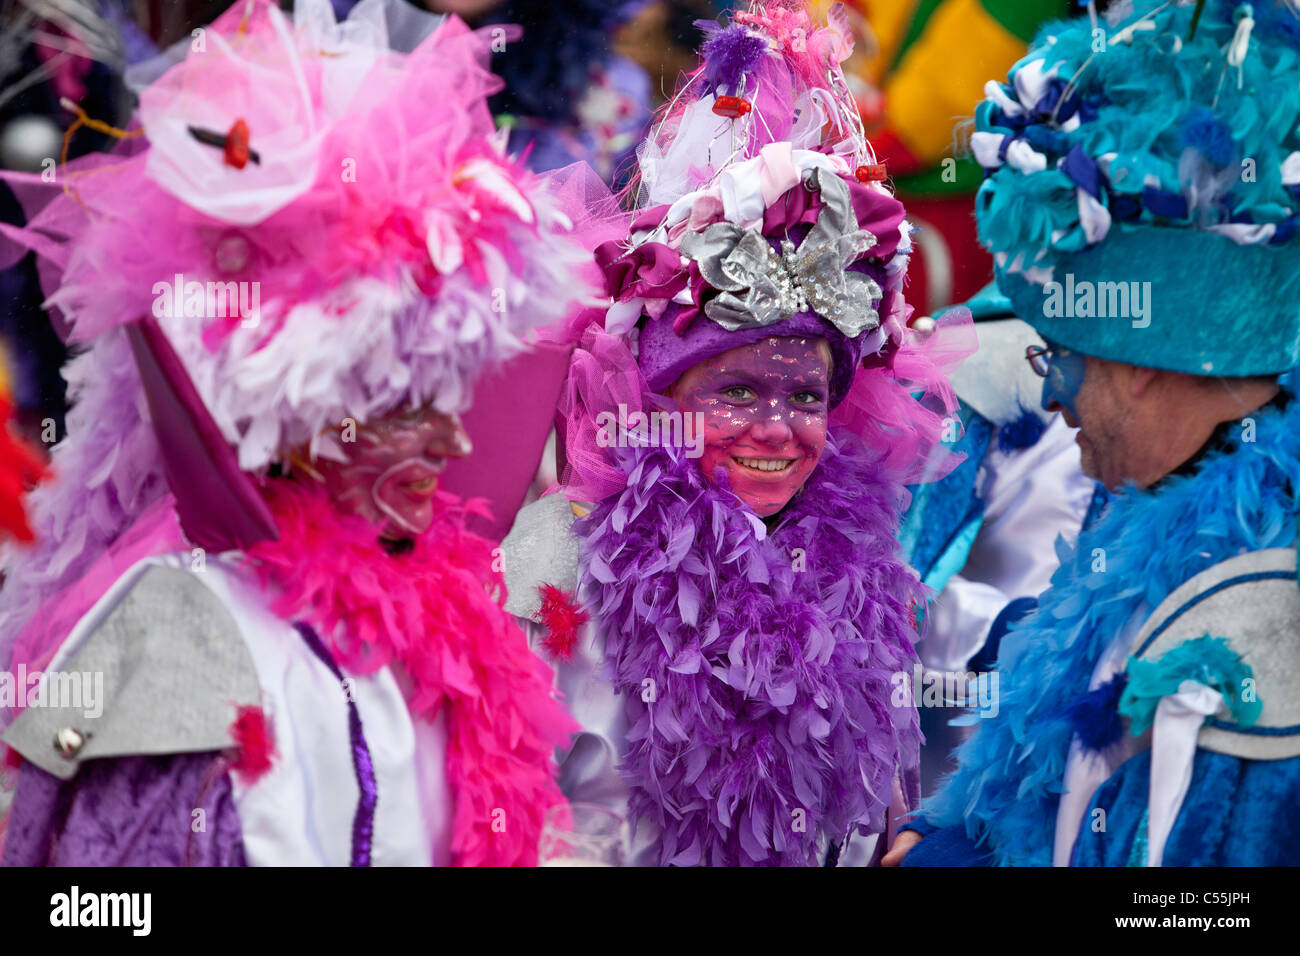 Les Pays-Bas, Maastricht, aux personnes bénéficiant chaque année au cours du festival de carnaval. Banque D'Images